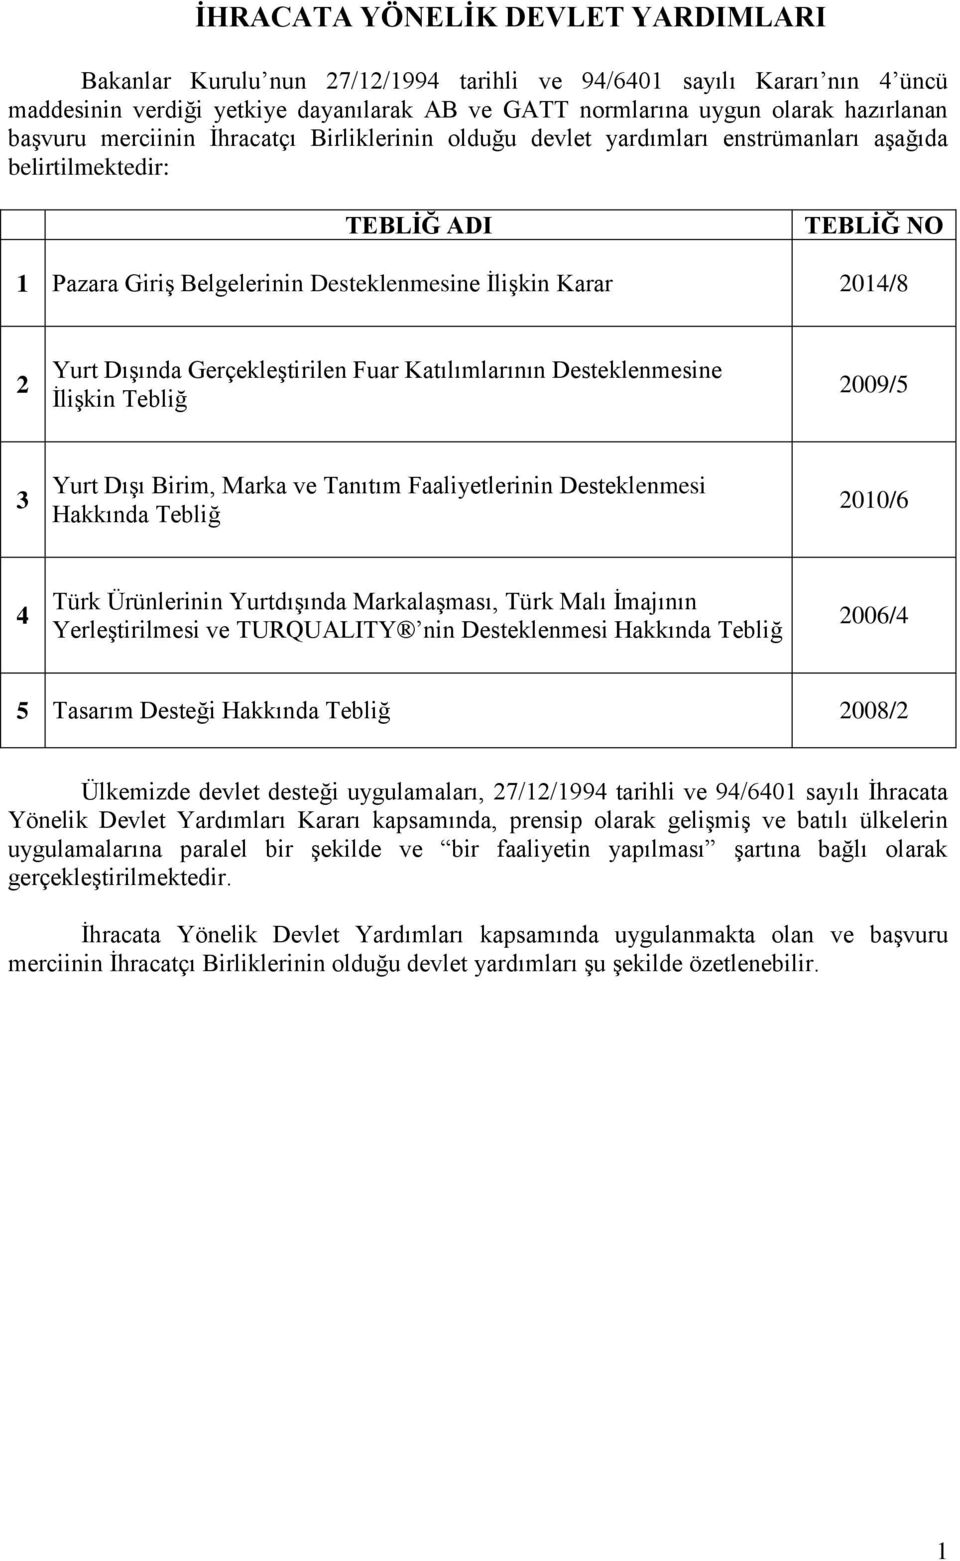 Fuar Katılımlarının Desteklenmesine İlişkin Tebliğ 2009/5 3 Yurt Dışı Birim, Marka ve Tanıtım Faaliyetlerinin Desteklenmesi Hakkında Tebliğ 2010/6 4 Türk Ürünlerinin Yurtdışında Markalaşması, Türk